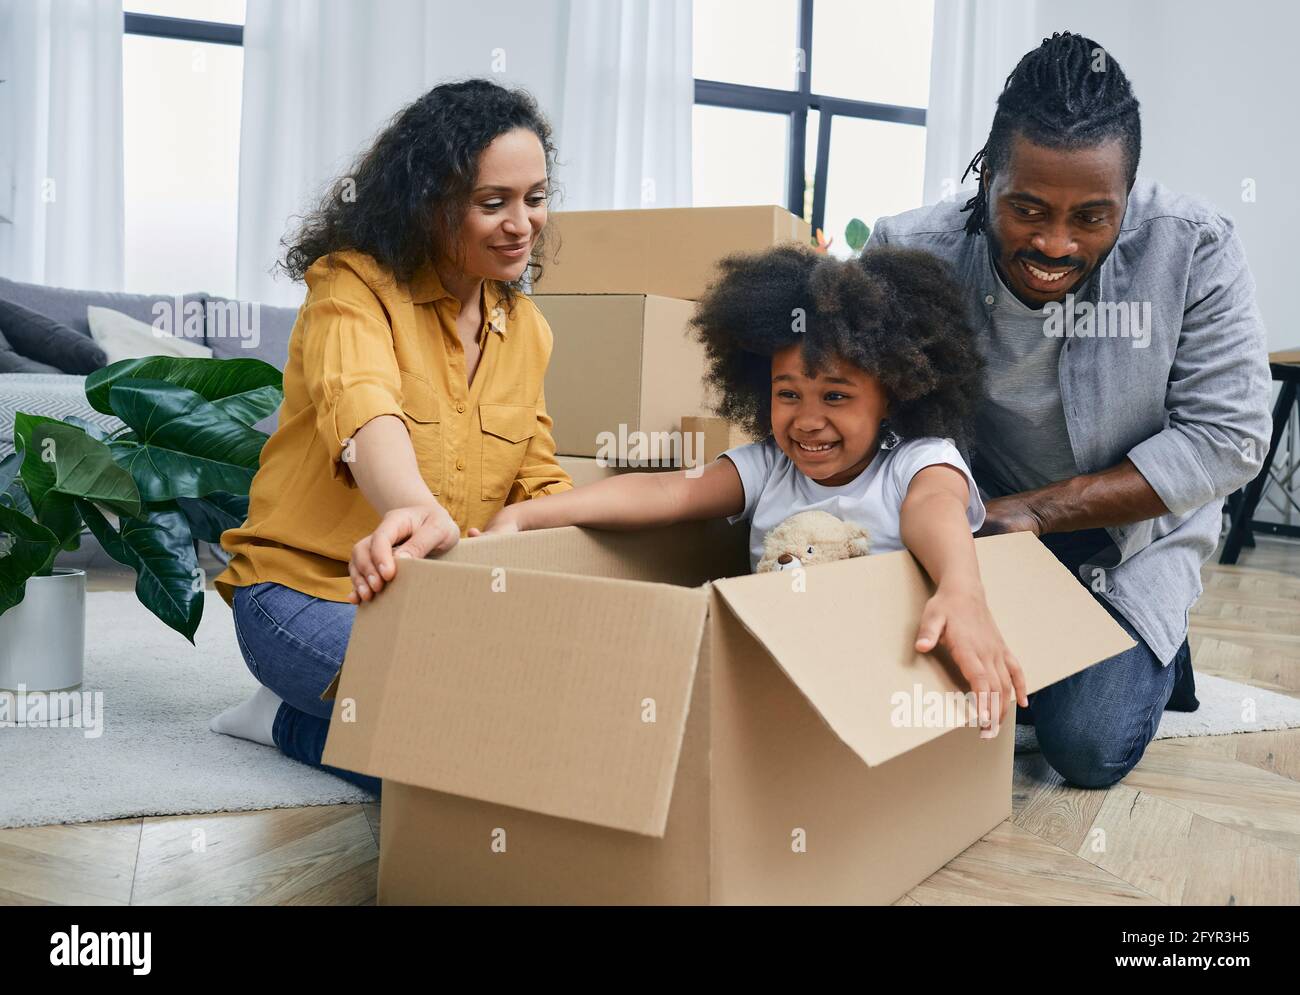 Nettes afroamerikanisches kleines Mädchen, das in einer Kartonbox sitzt und mit ihren Eltern spielt, während es in ein neues Zuhause zieht Stockfoto